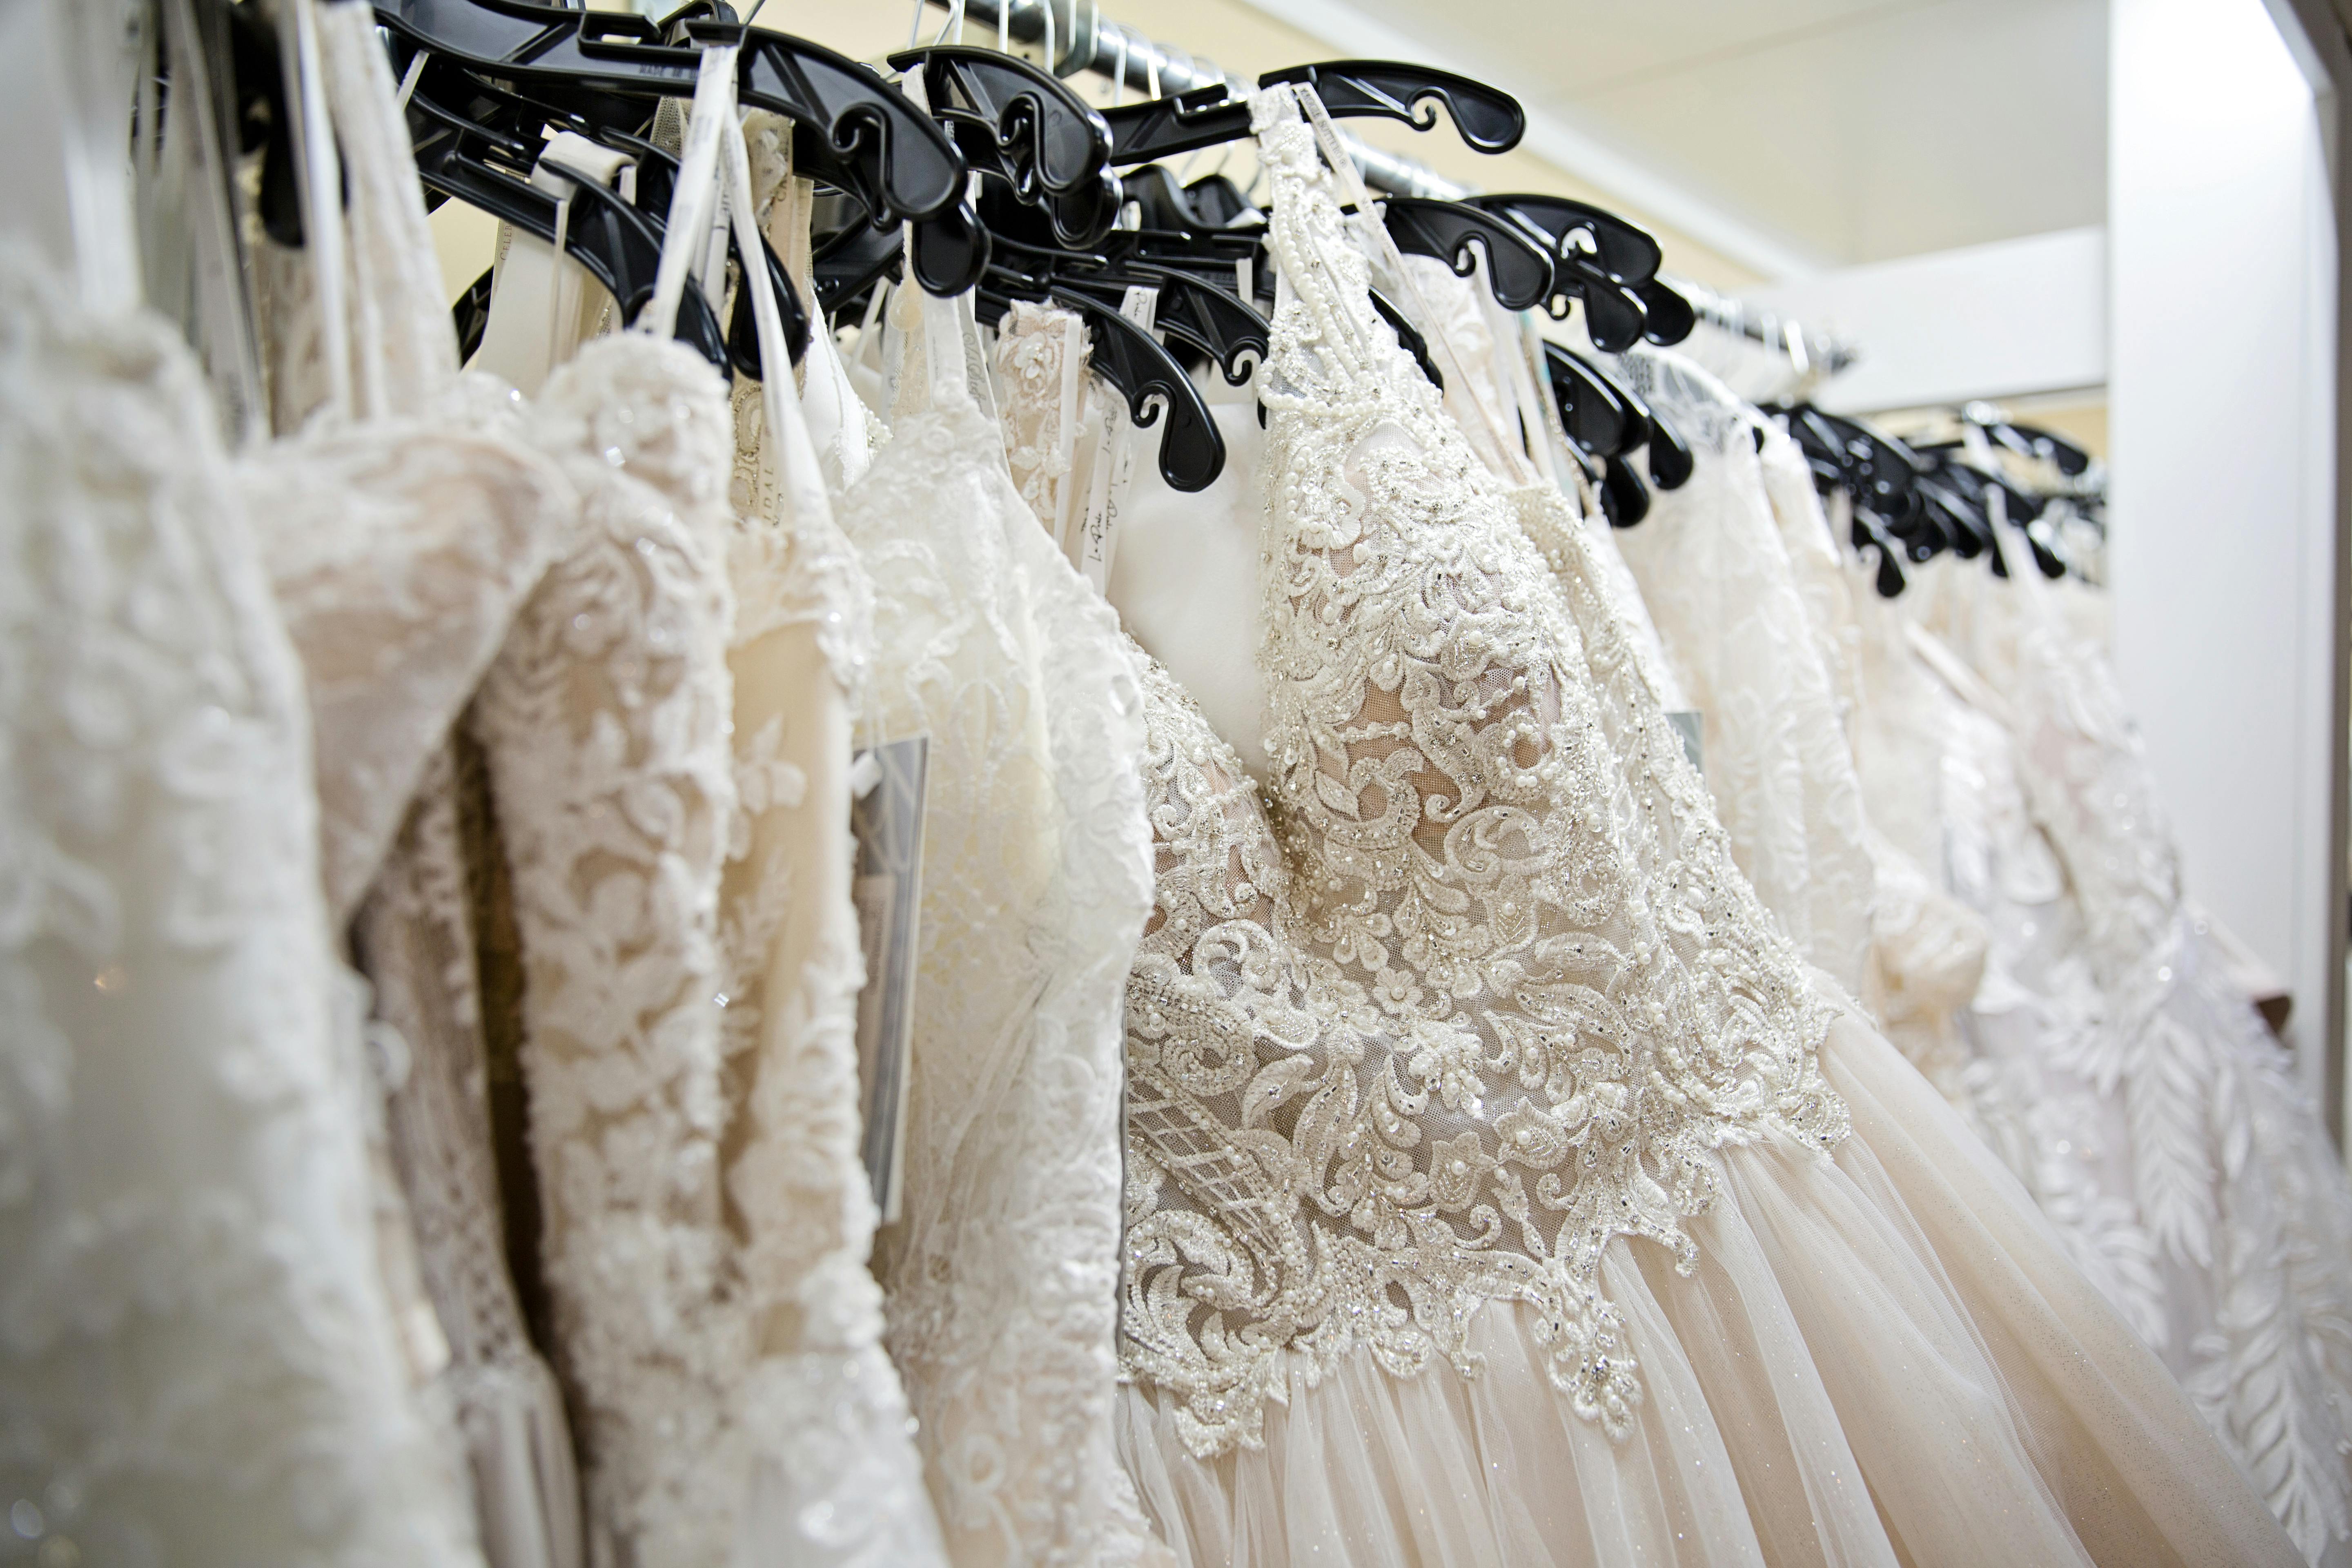 Un perchero con vestidos de novia | Fuente: Pexels